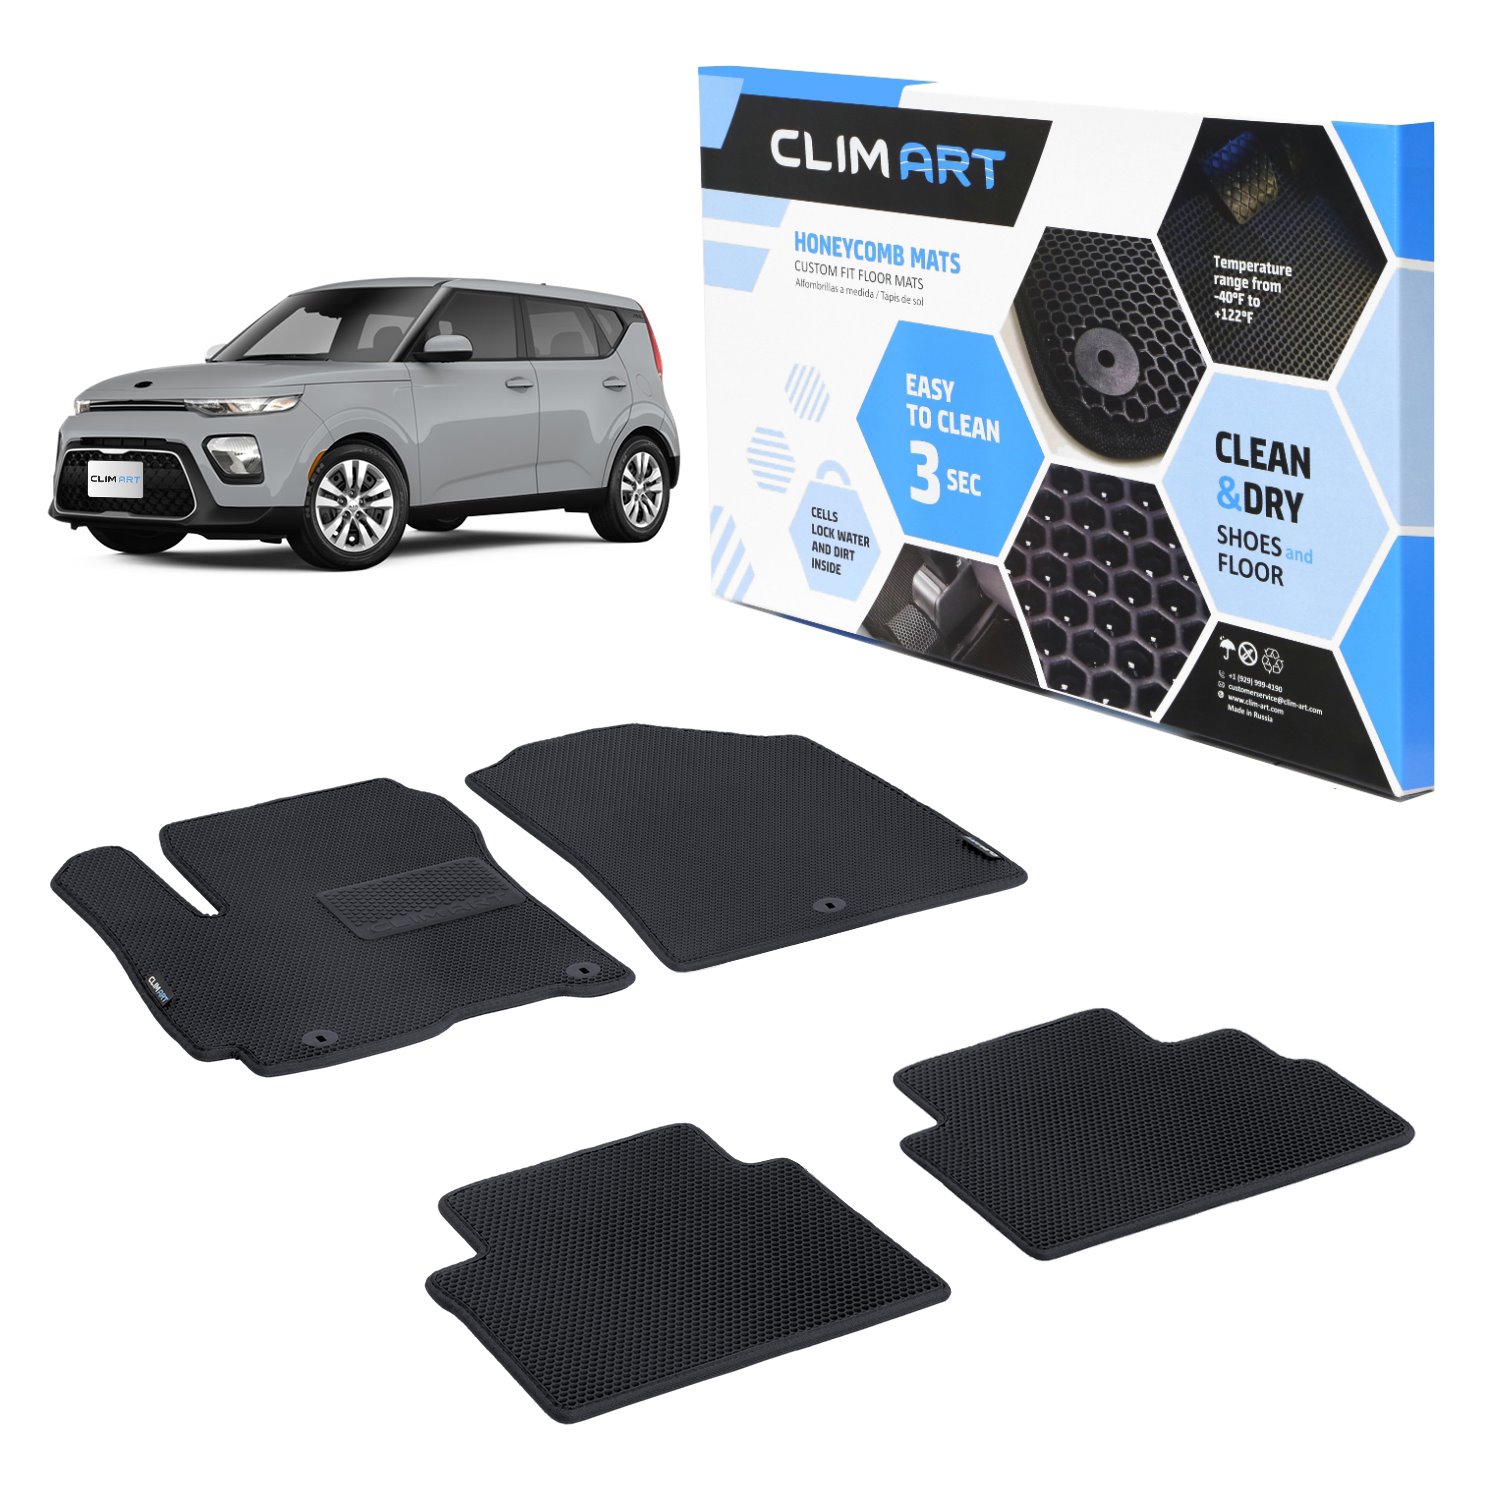 CLIM ART Honeycomb Custom Fit Floor Mats Fits Select Kia Soul